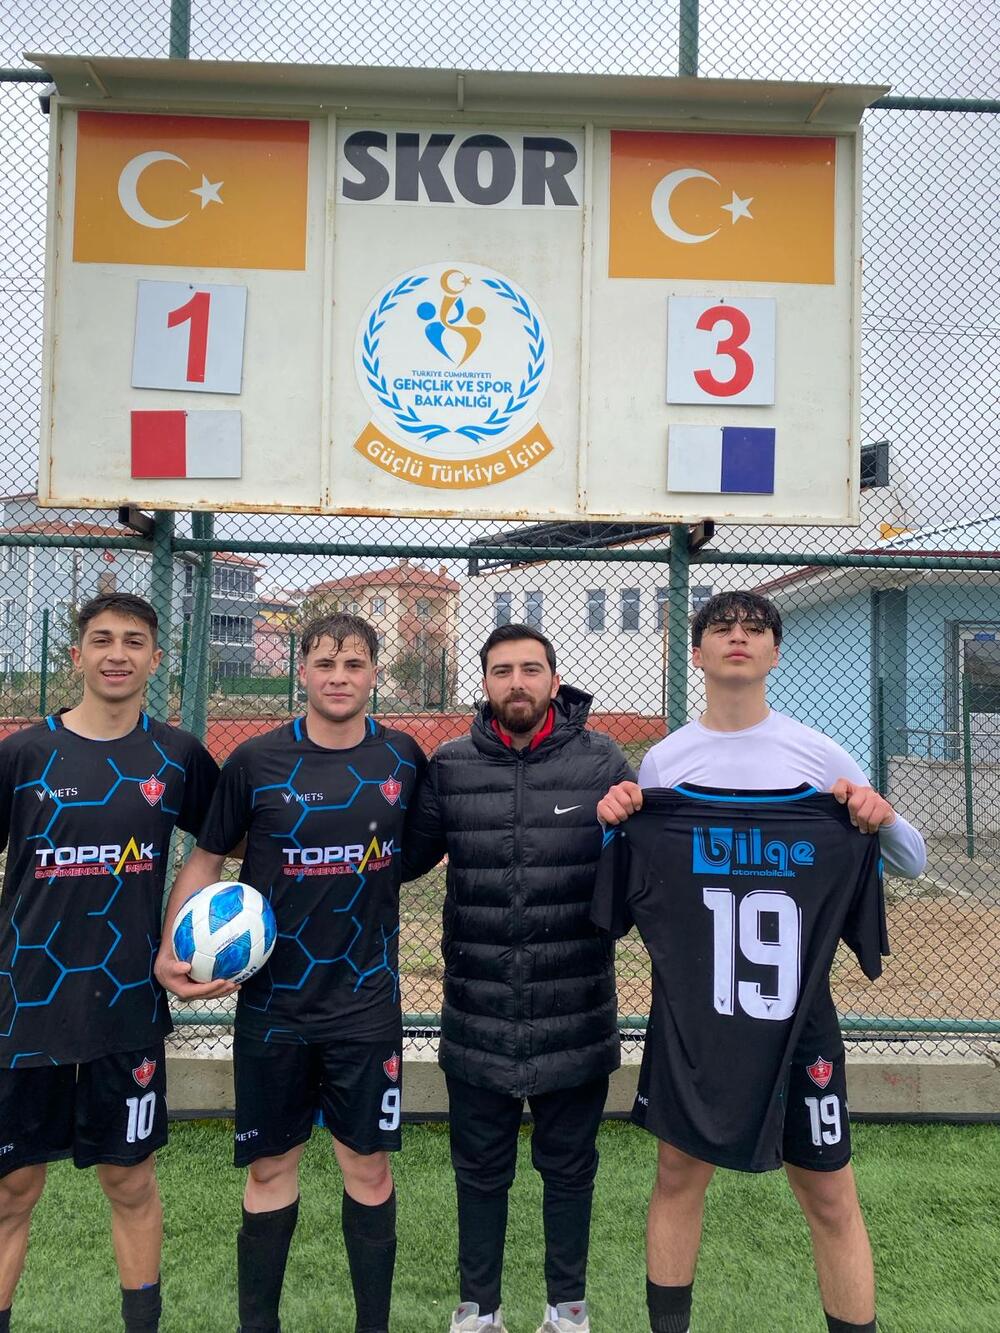 Osmancıkgücü Spor Ligde 2 De 2 Yaptı! (1)